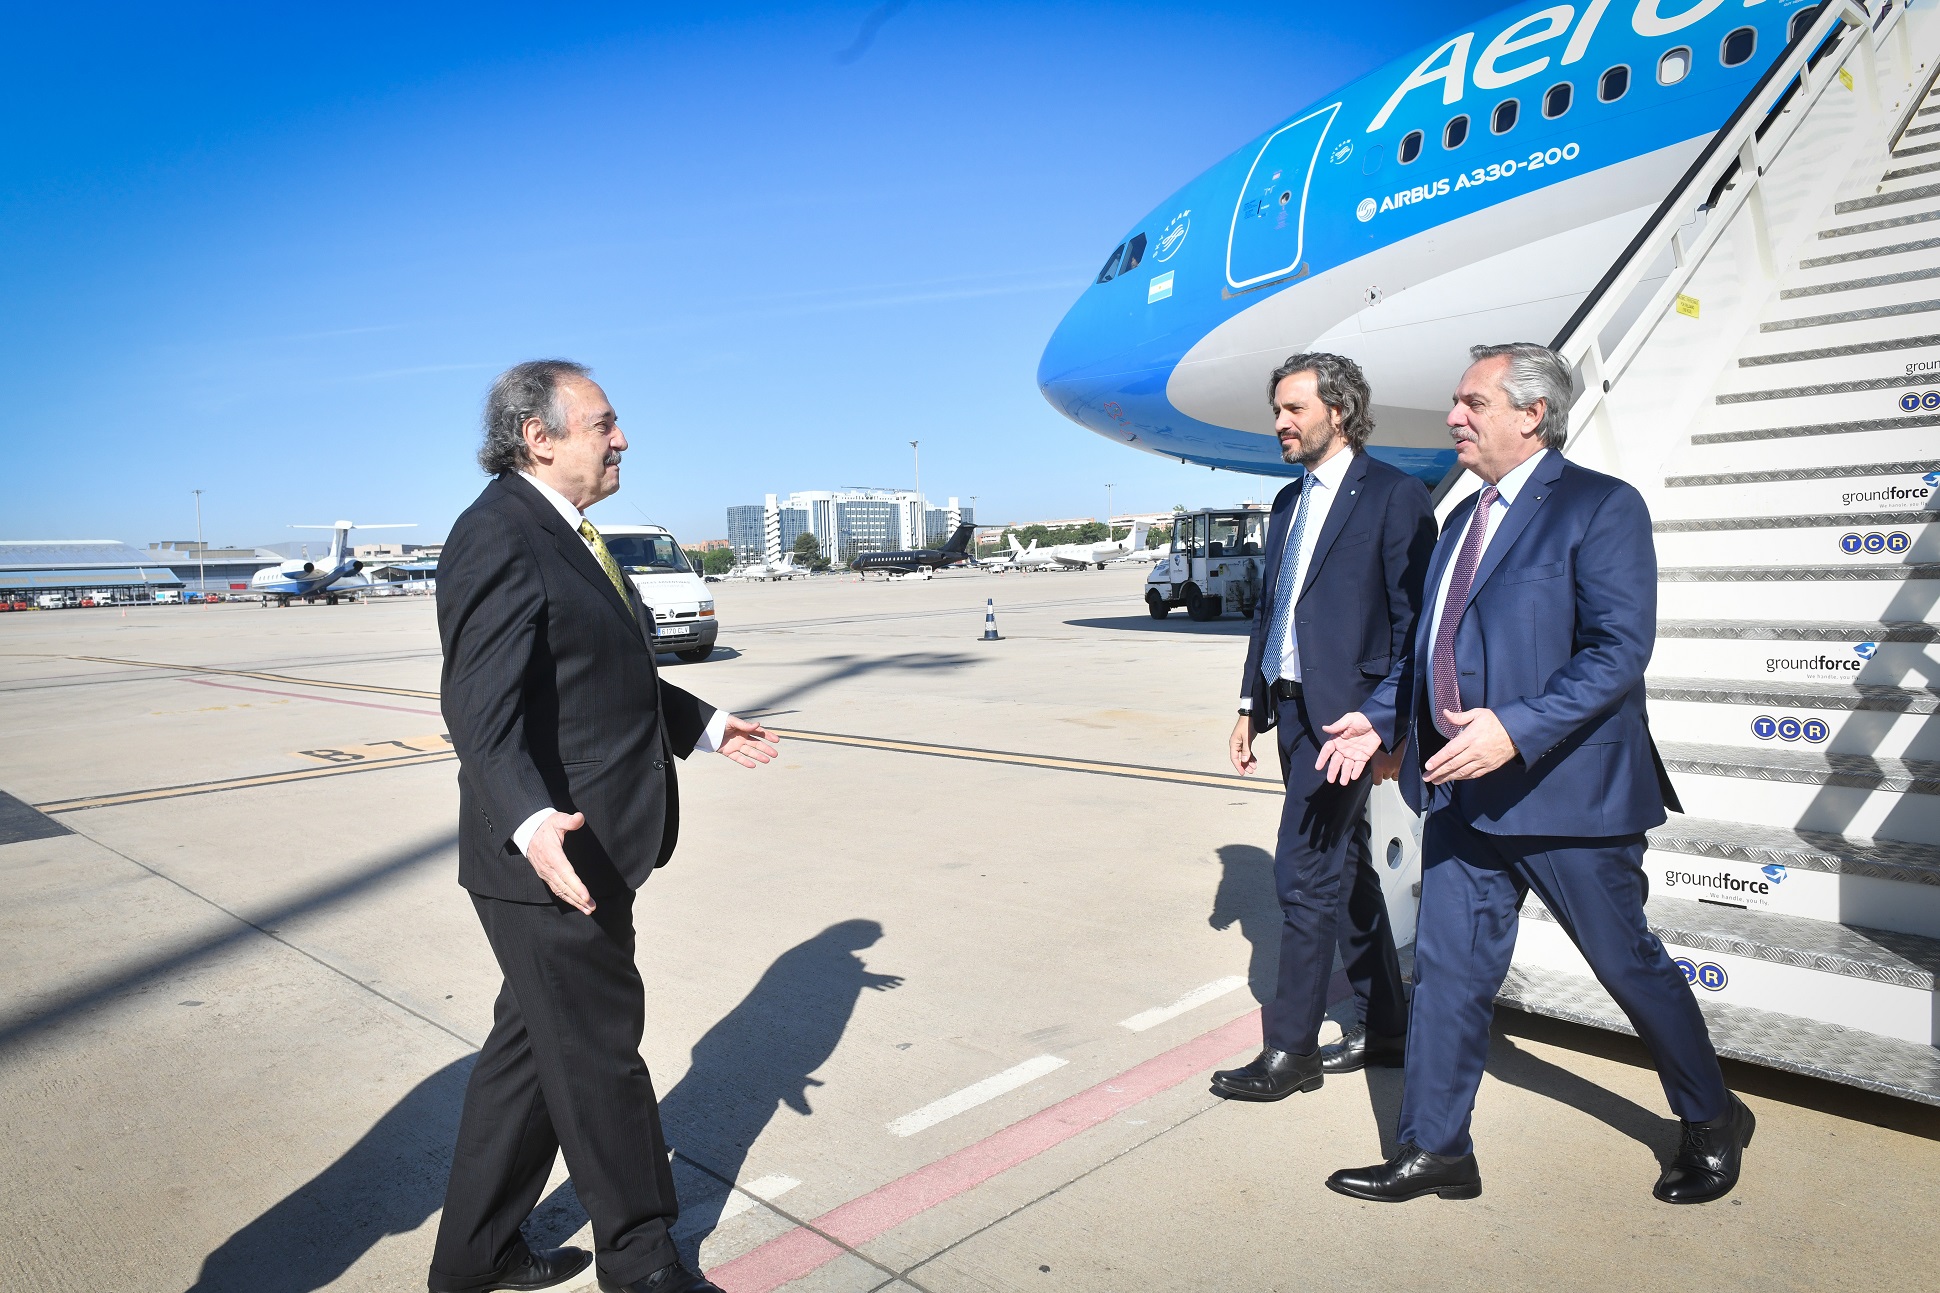 El presidente Alberto Fernández ya llegó a España, donde se reunirá hoy con su par, Pedro Sánchez, y el rey Felipe VI